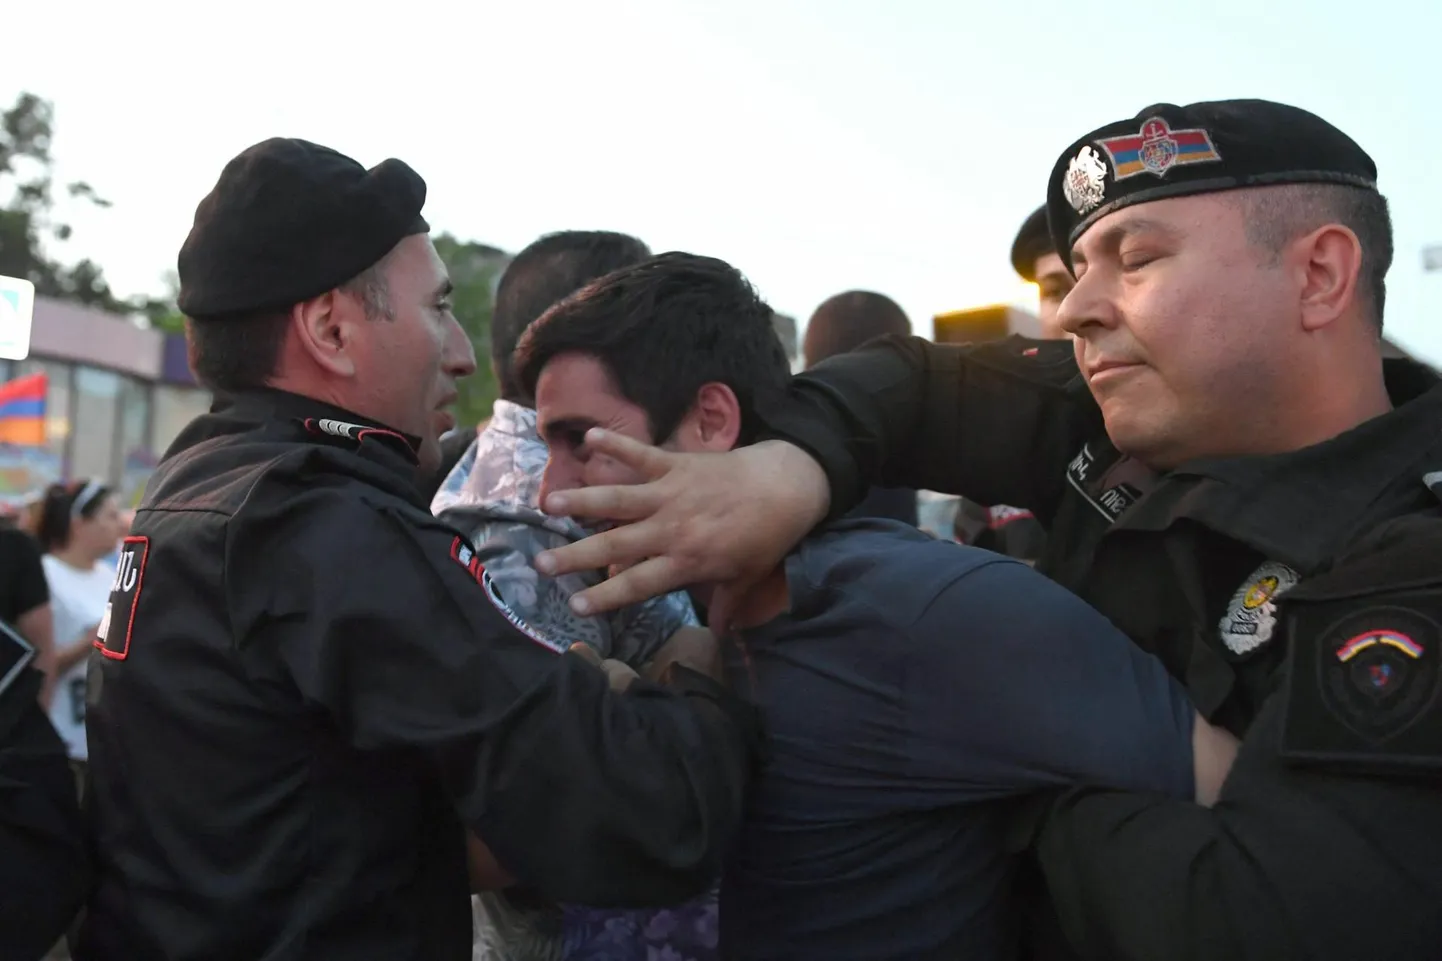 Armeenia politseinikud arreteerimas protestijaid meeleavalduse ajal, mis oli suunatud külade üleandmise vastu Aserbaidžaanile.

 

 